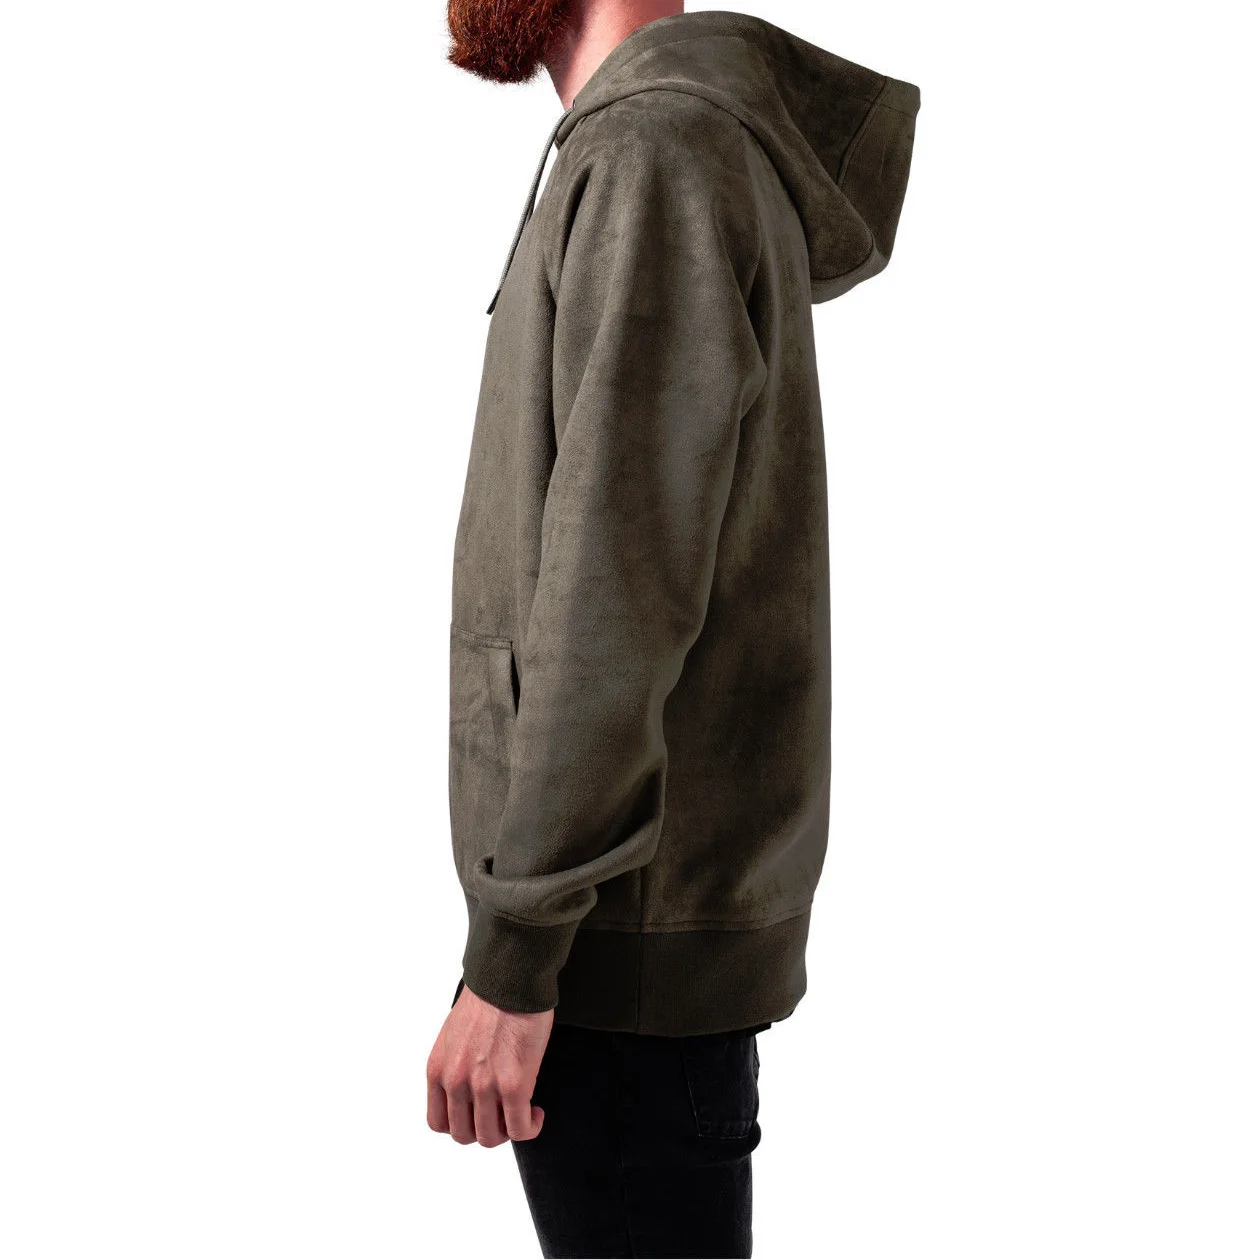 Wholesale Fleece Hoodie New Design Long Sleeve Men's Pullover Winter ...